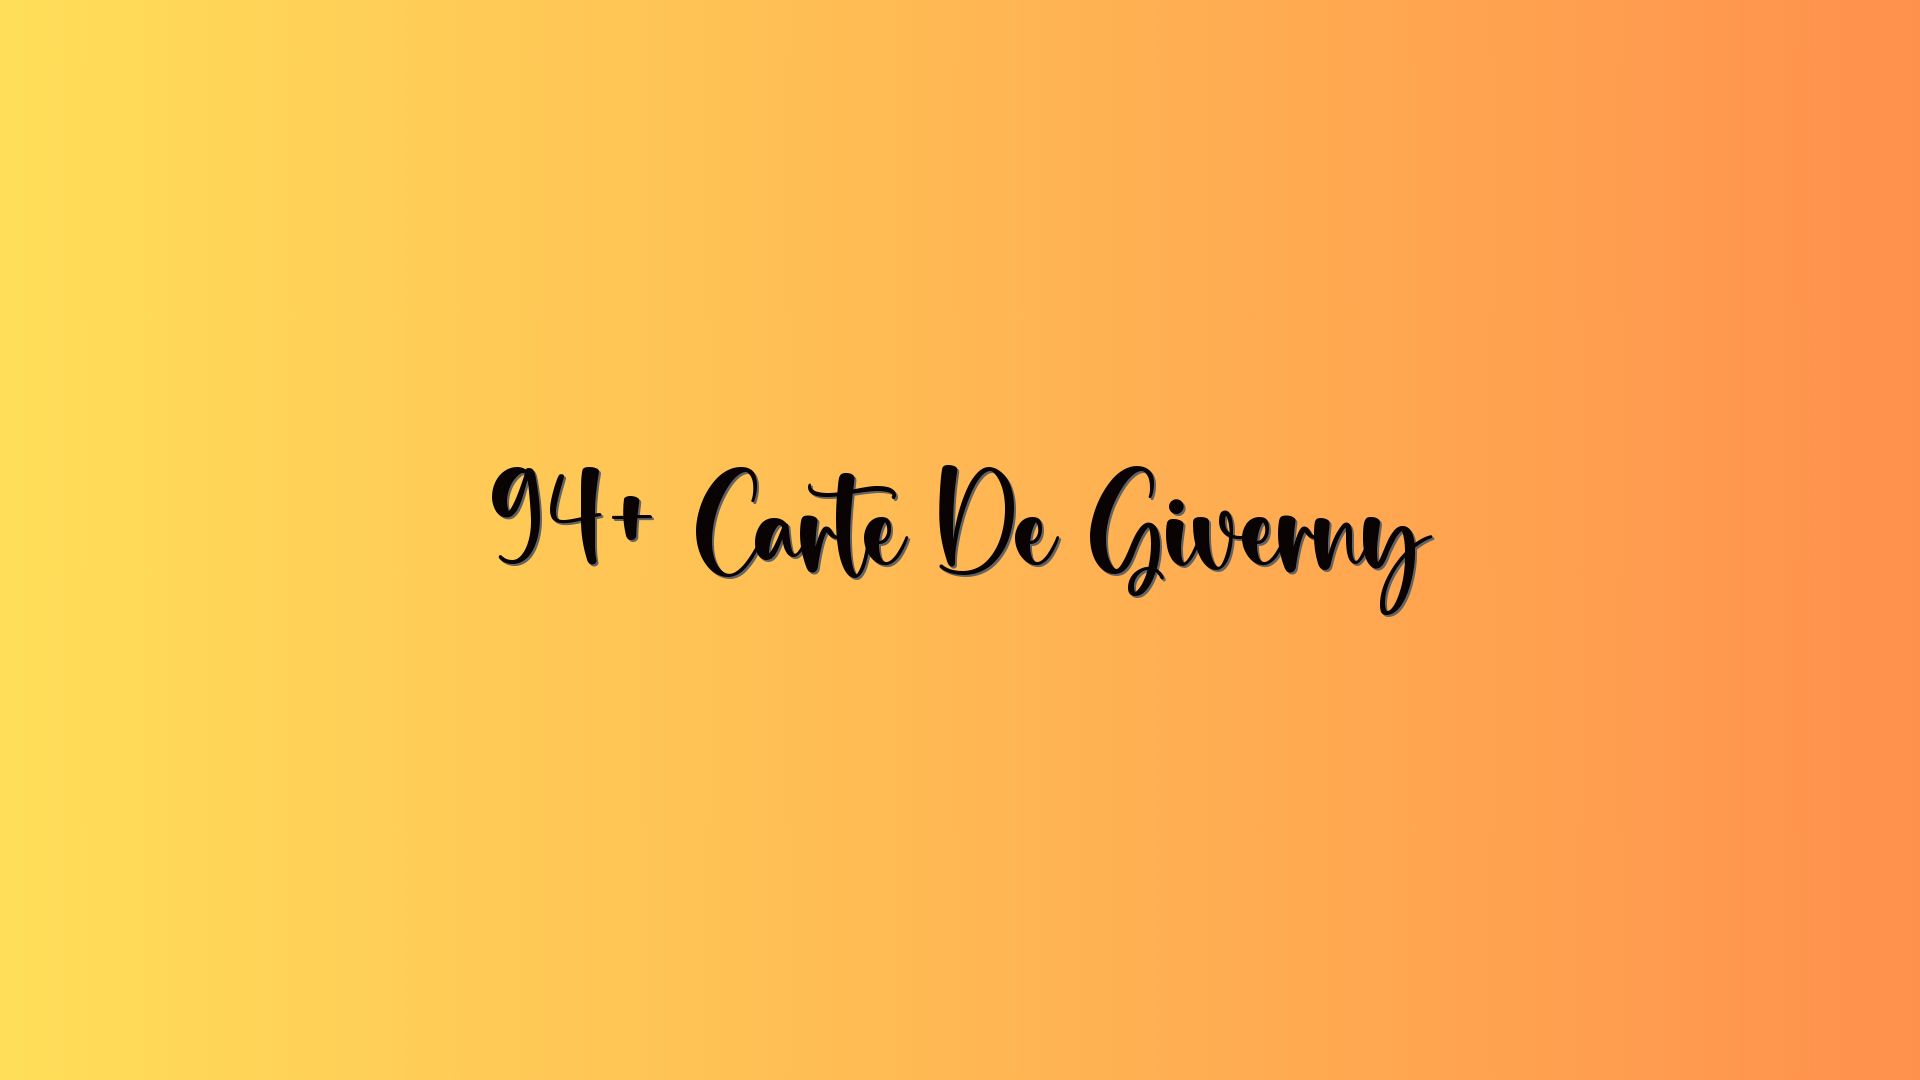 94+ Carte De Giverny